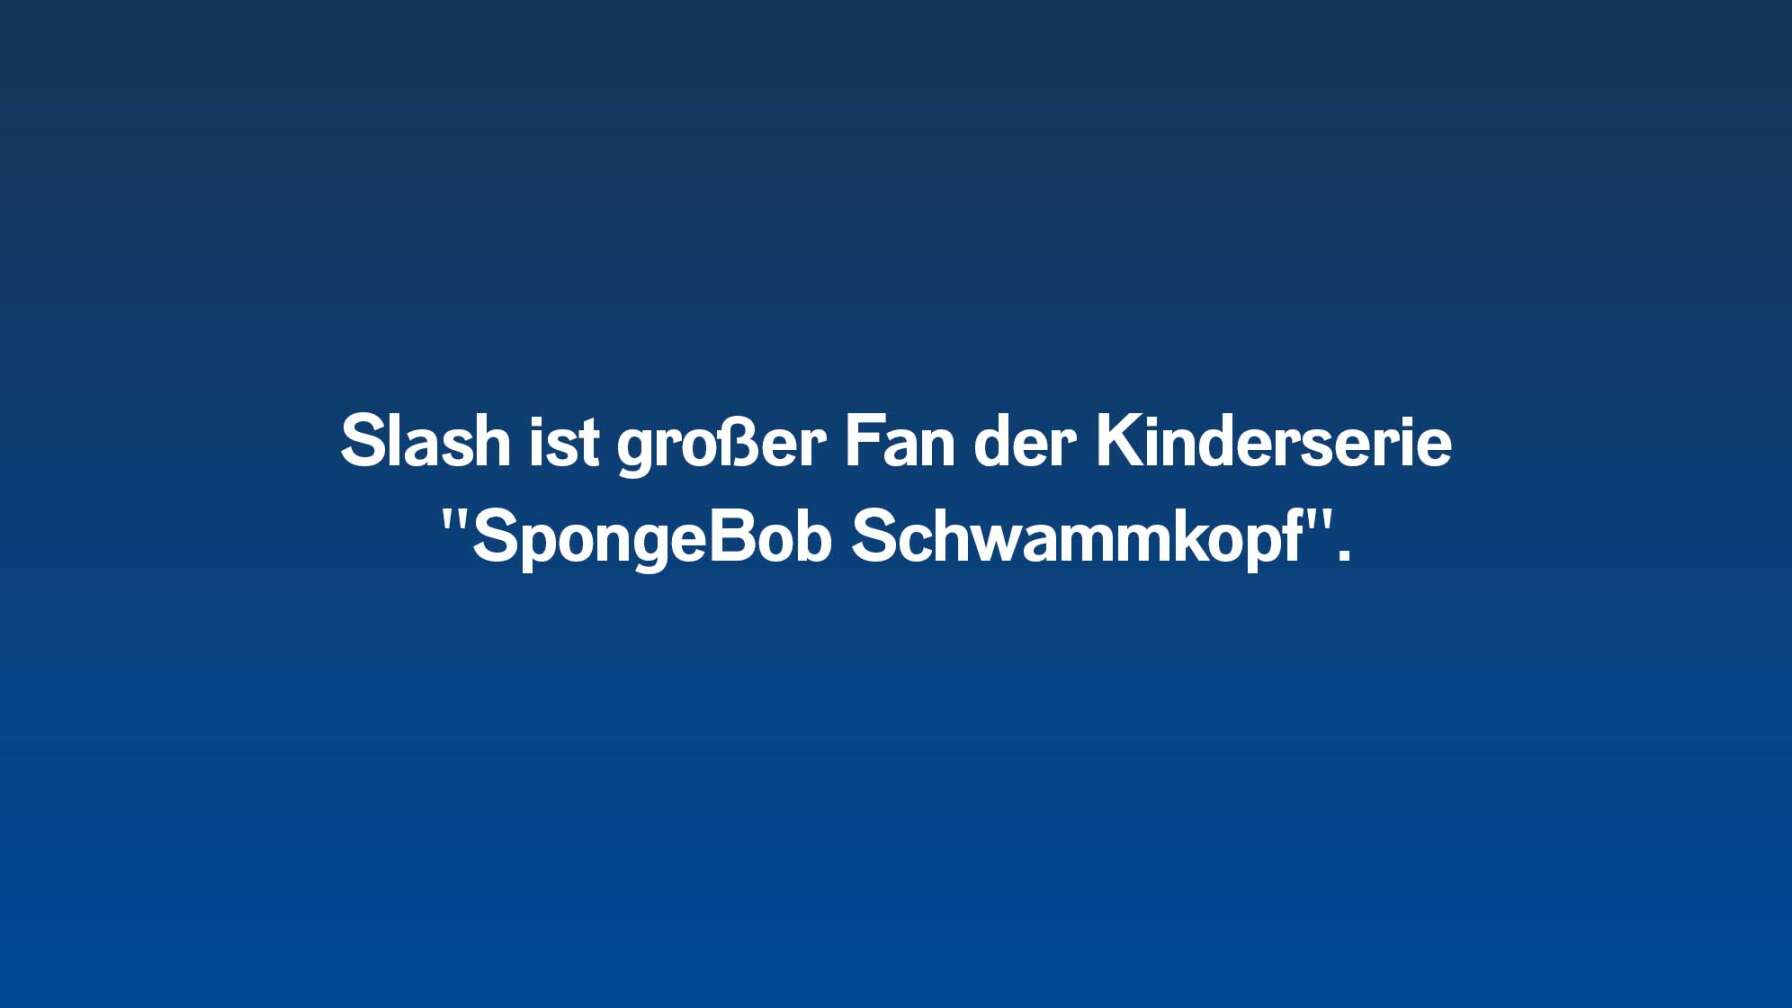 Slash ist großer Fan der Kinderserie "SpongeBob Schwammkopf".